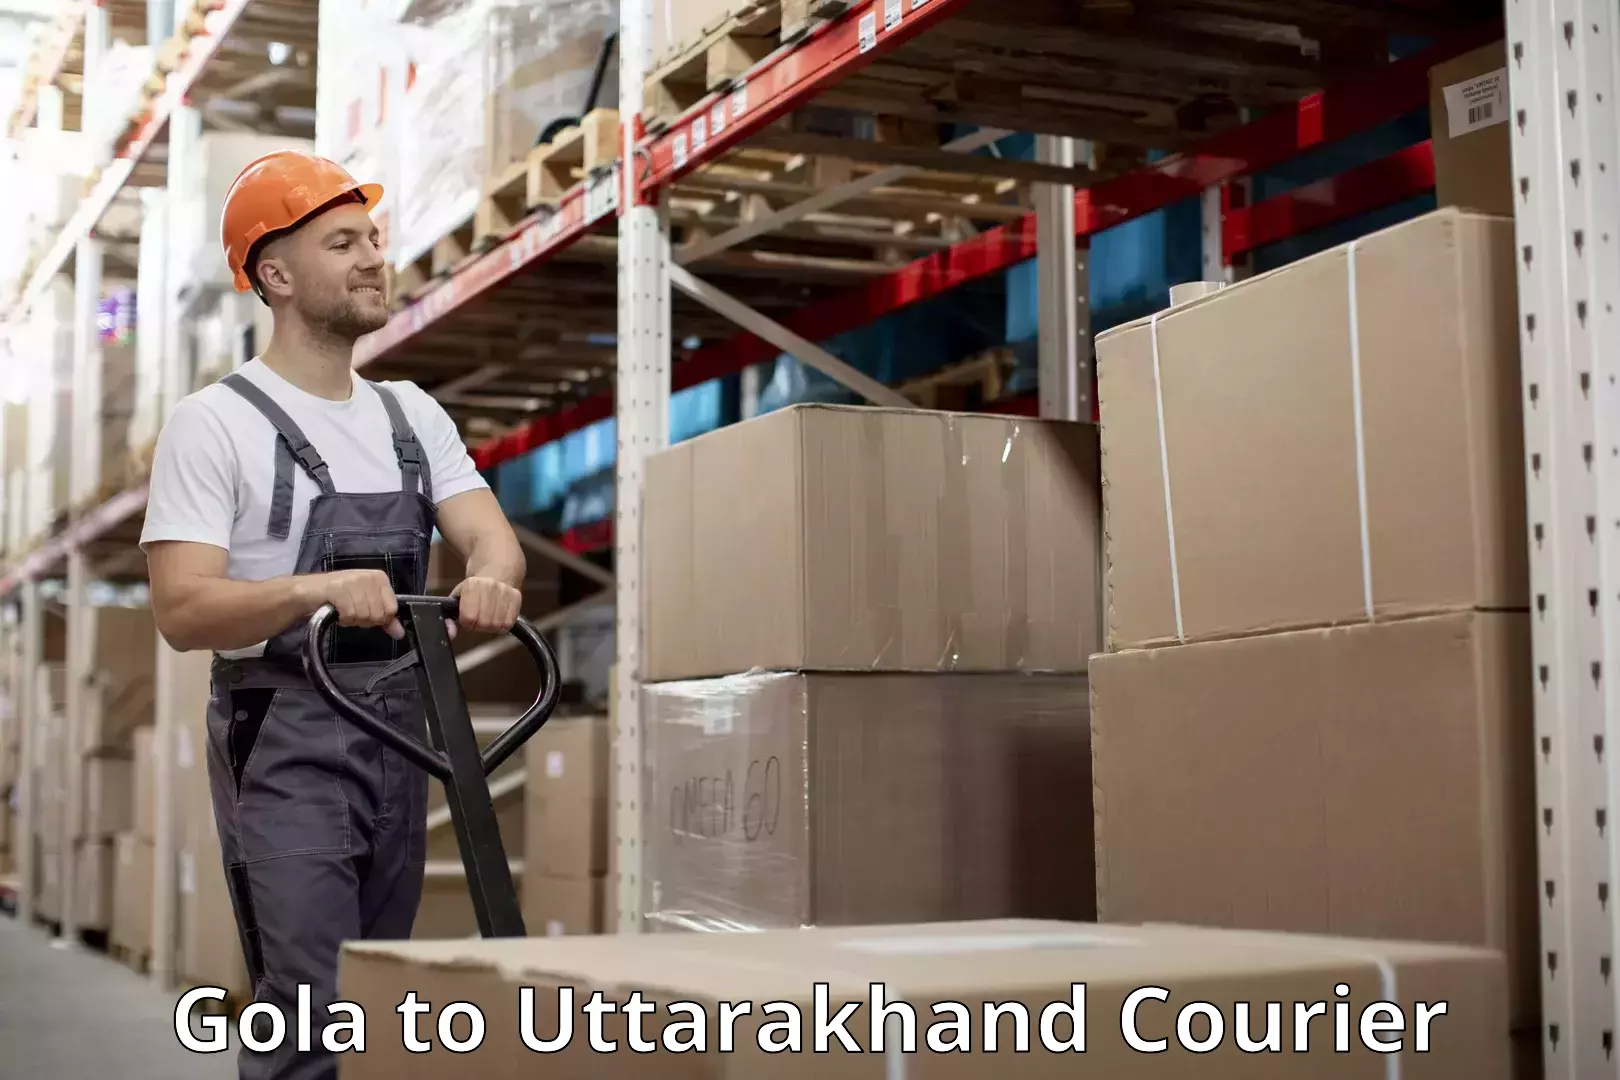 Luggage shipping service Gola to Uttarakhand